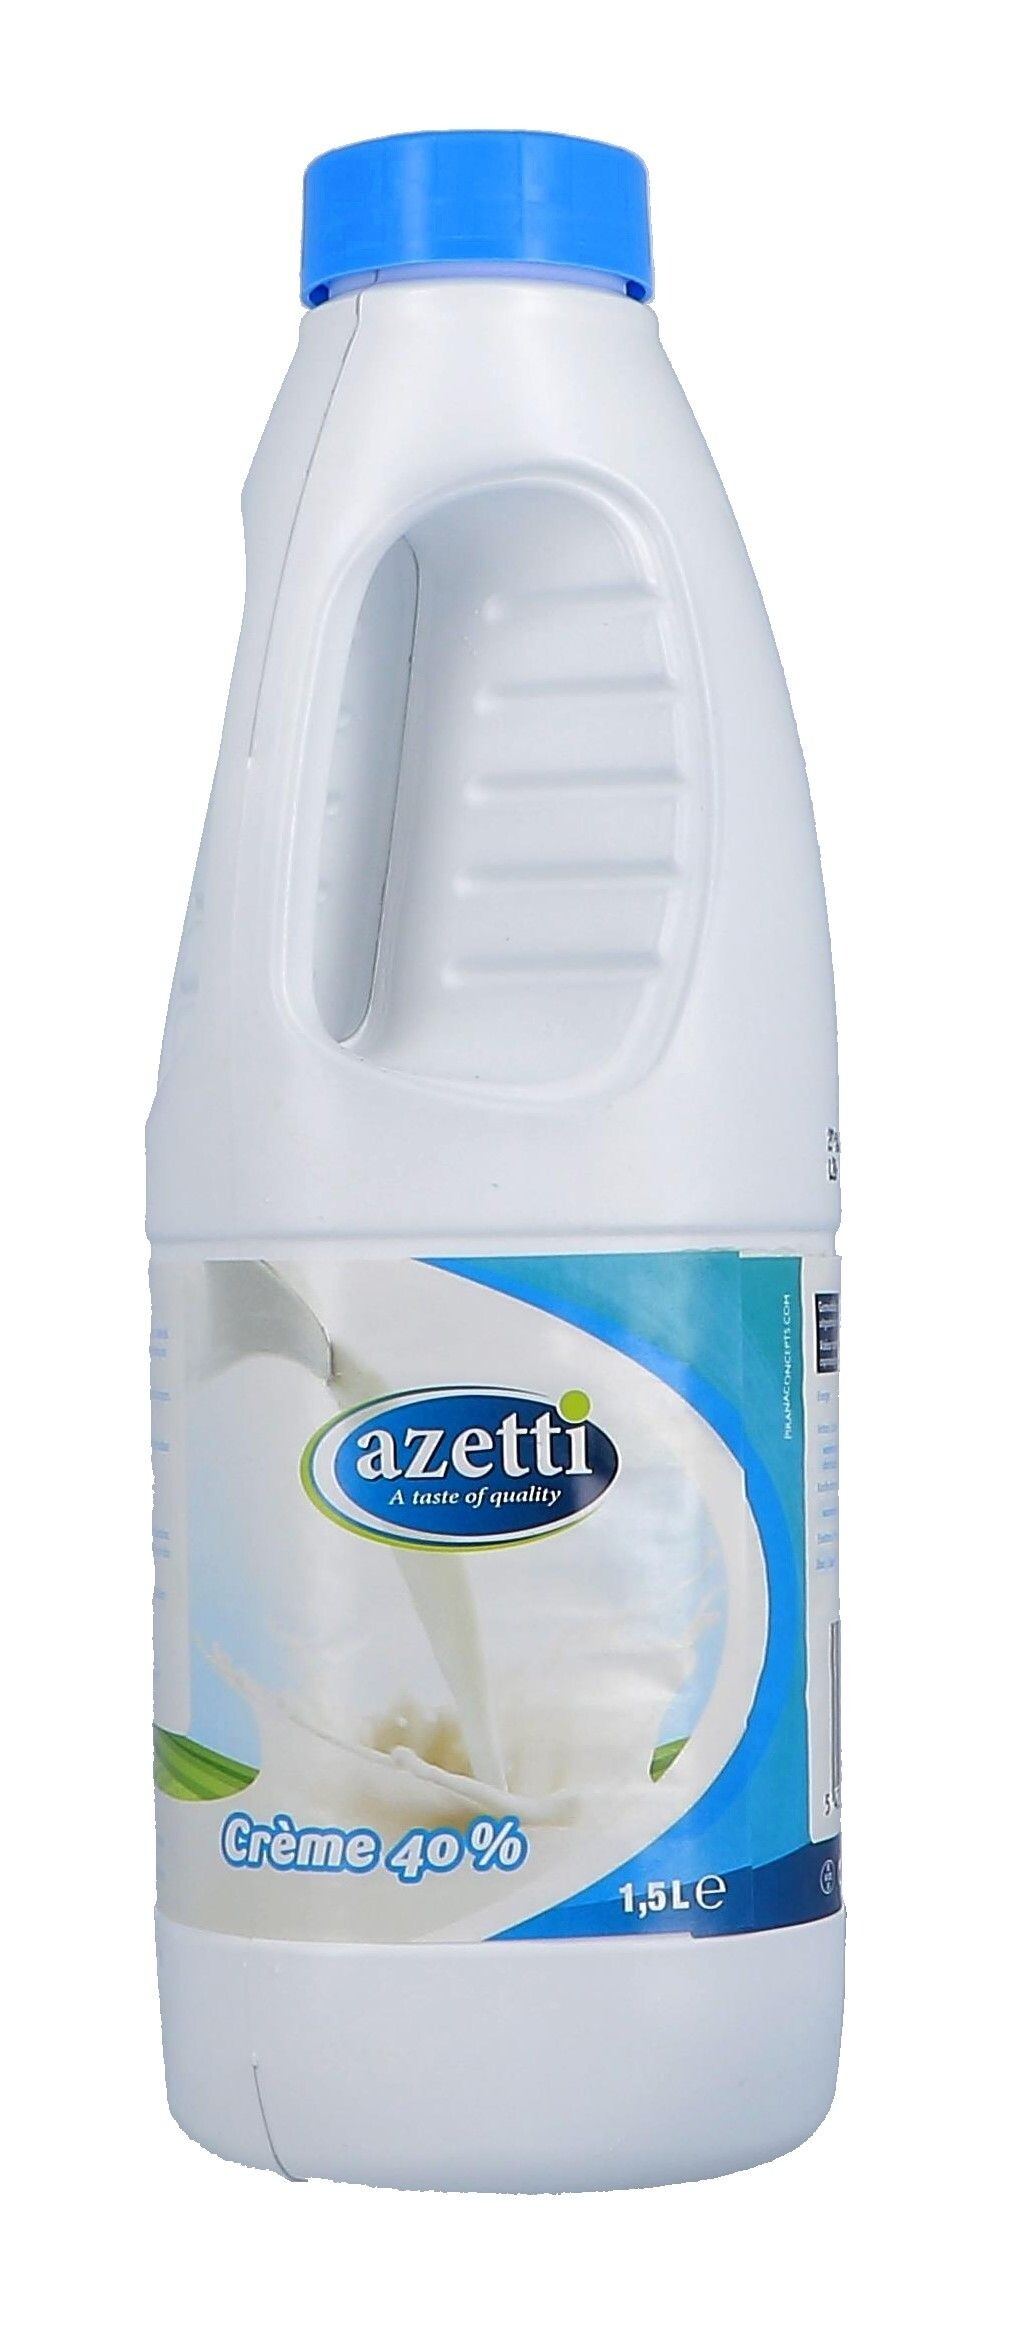 Azetti Cream 40% 1,5L